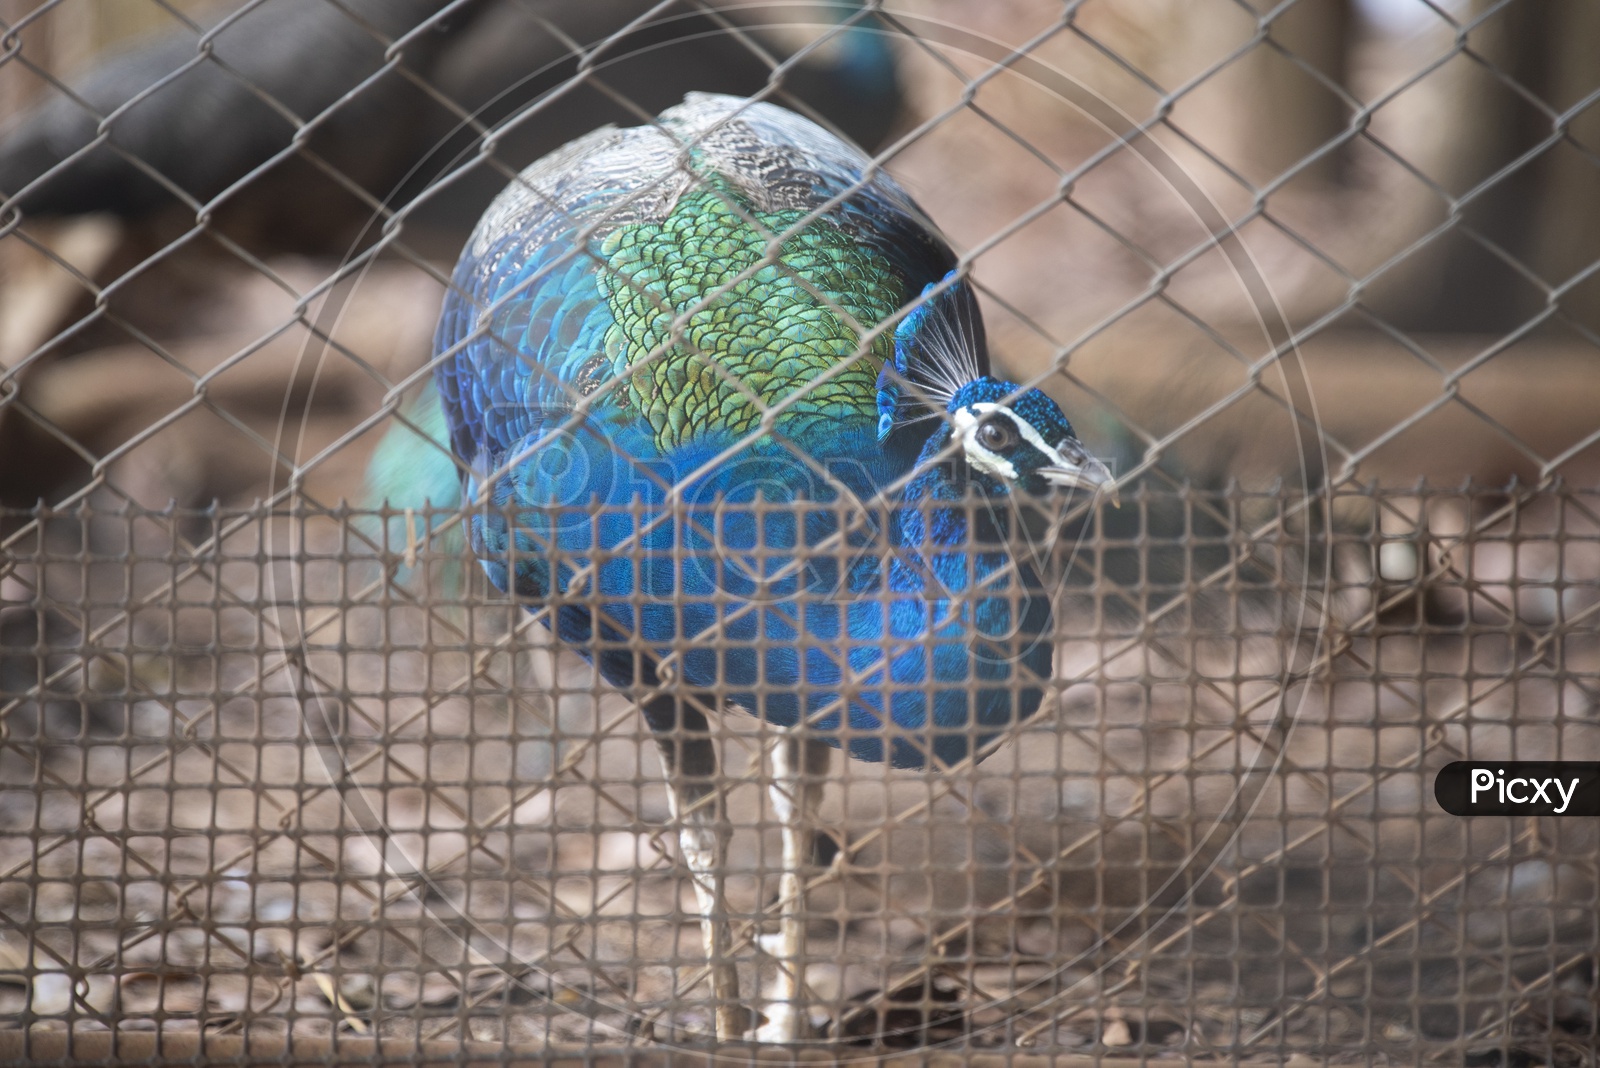 Peacock Bird Closeup In a Cage Ate Zoo